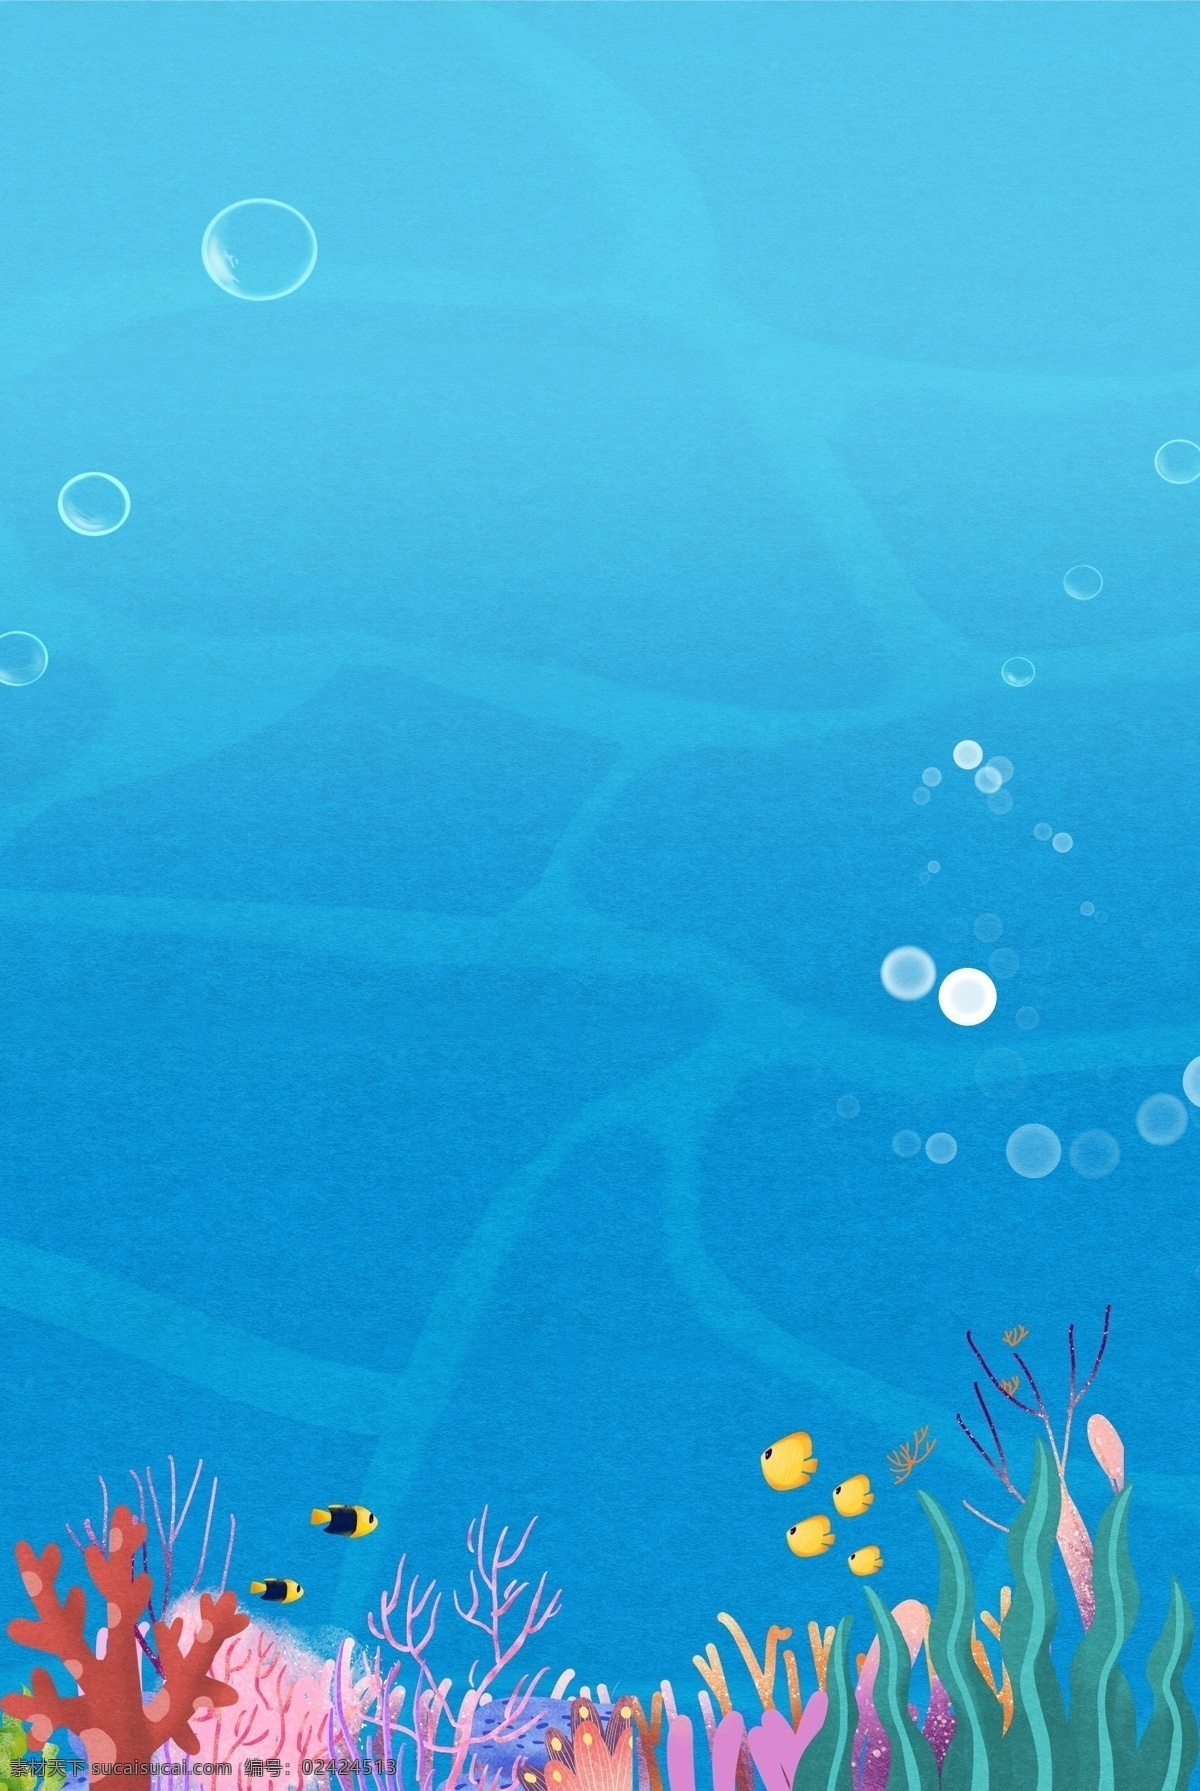 海洋世界 珊瑚 分层 banner 蓝色 手绘 夏天 海底 鱼 海草 气泡 创意合成